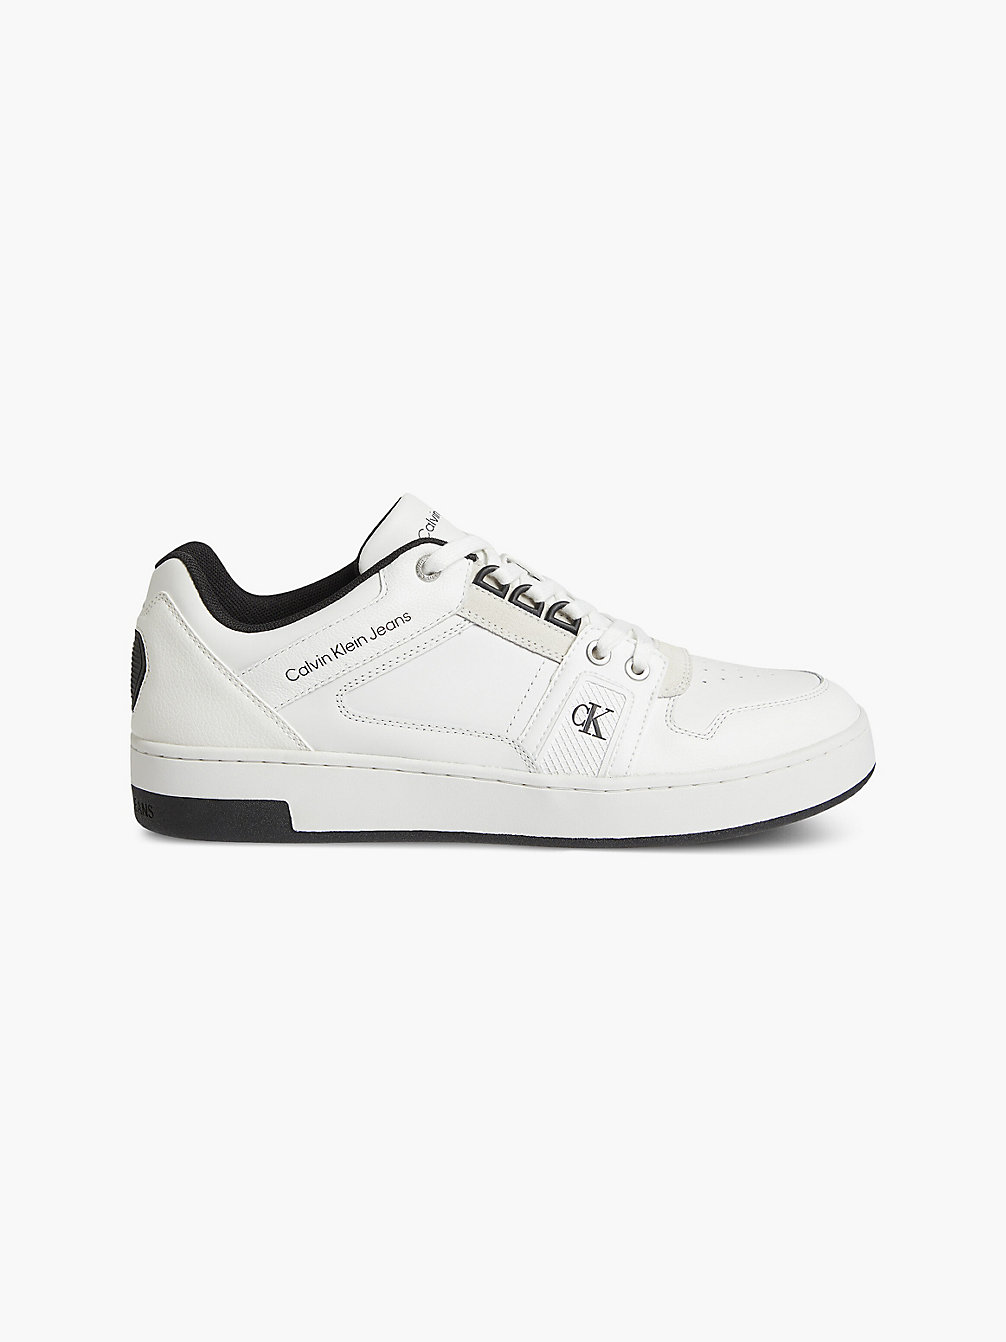 BRIGHT WHITE Leder-Sneakers undefined Herren Calvin Klein